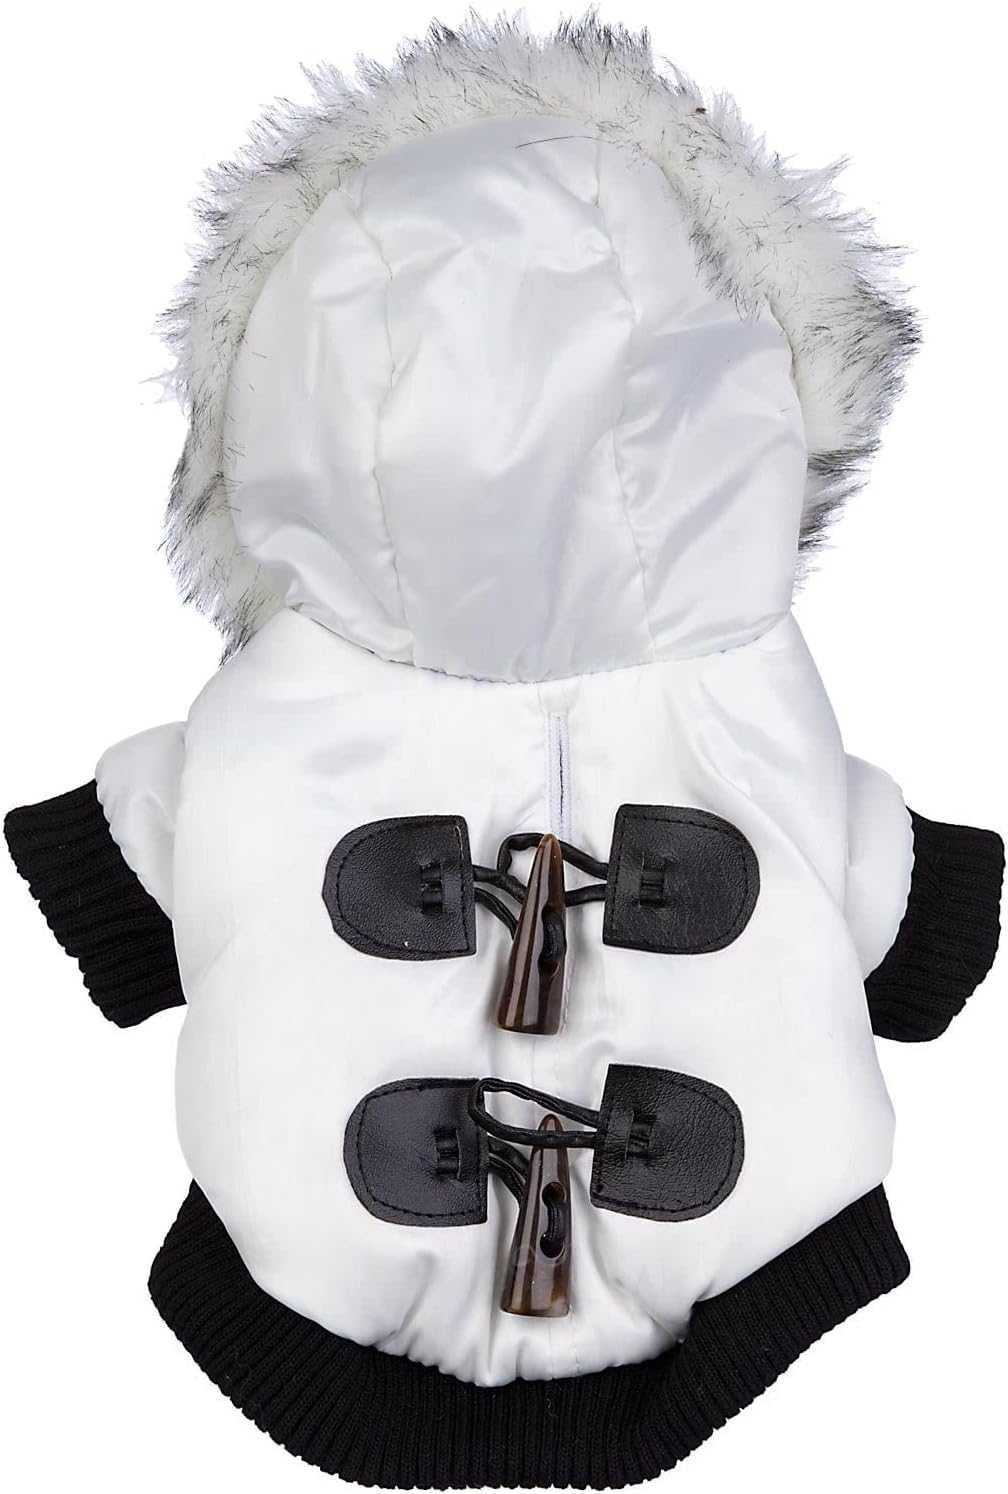 Pet Life Aspen Зимняя белая модная куртка для собак Парка